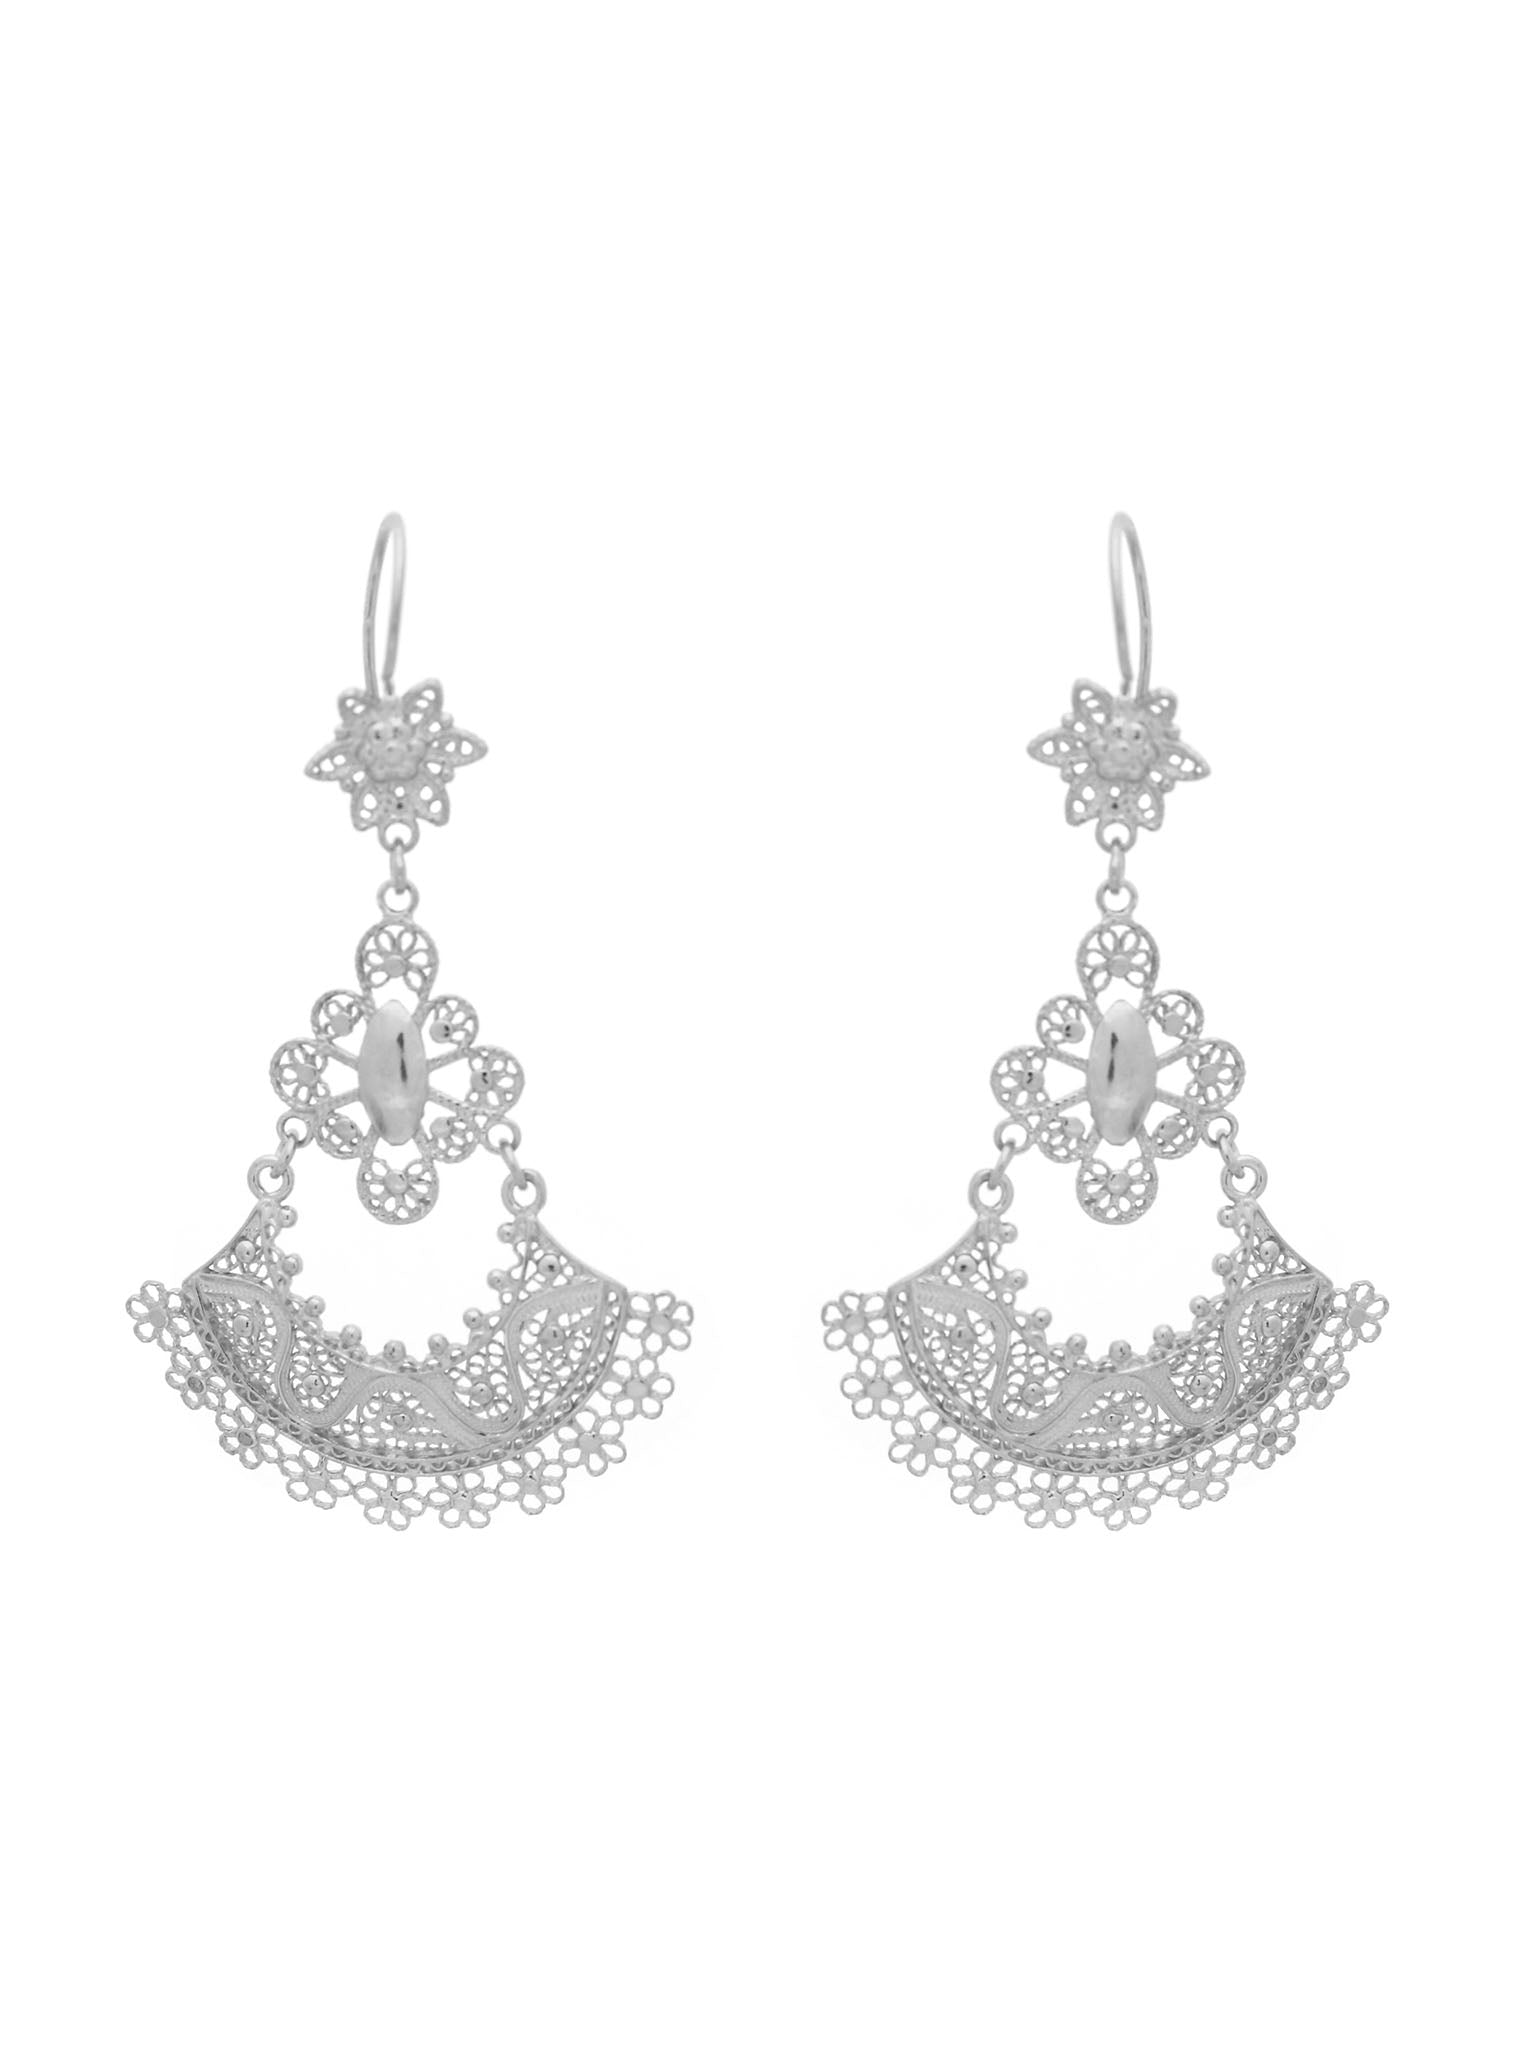 earrings Petticoat (Size M)